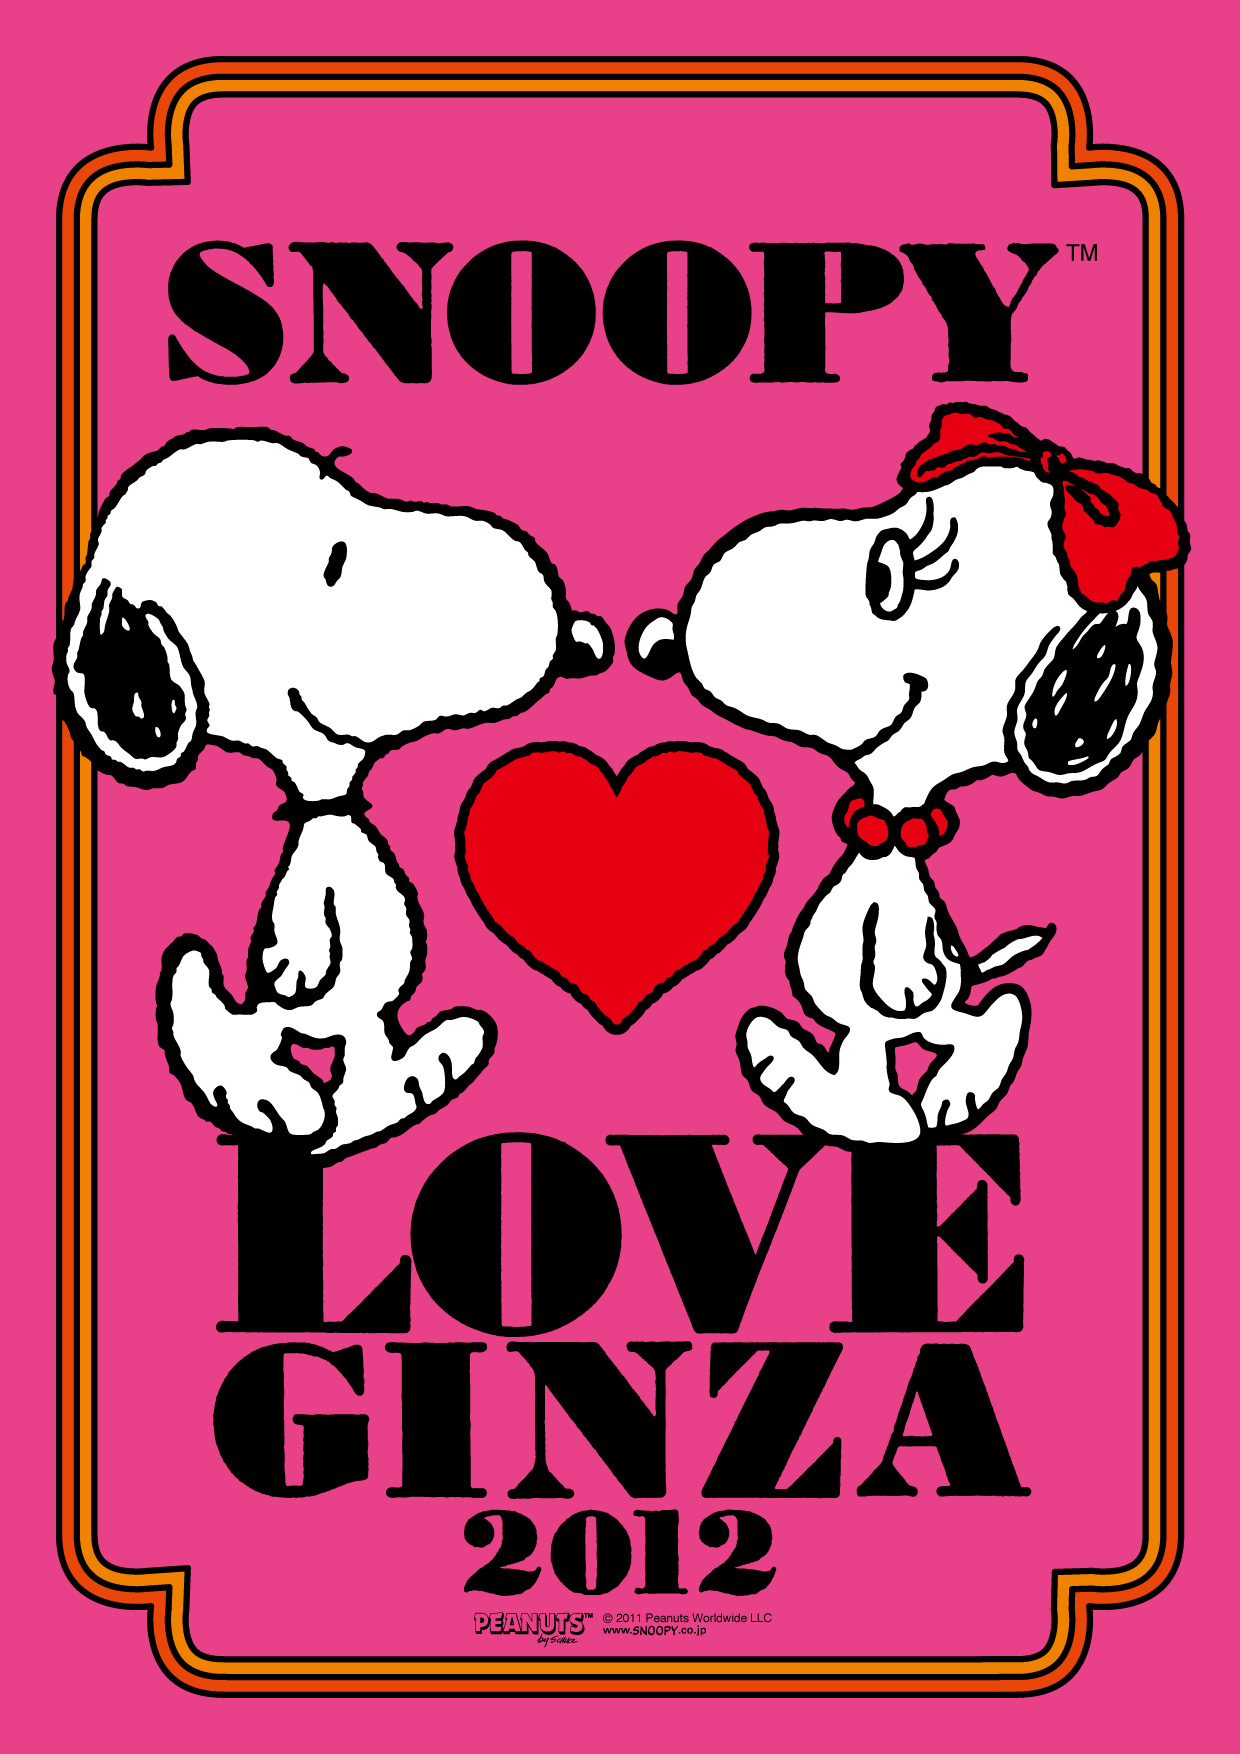 ソニービルがスヌーピーで一色に Snoopy Love Ginza 2012 ソニーとスヌーピーの楽しいネットワークライフ バレンタインを Snoopy Peanuts の仲間たちと楽しもう ソニー企業株式会社のプレスリリース